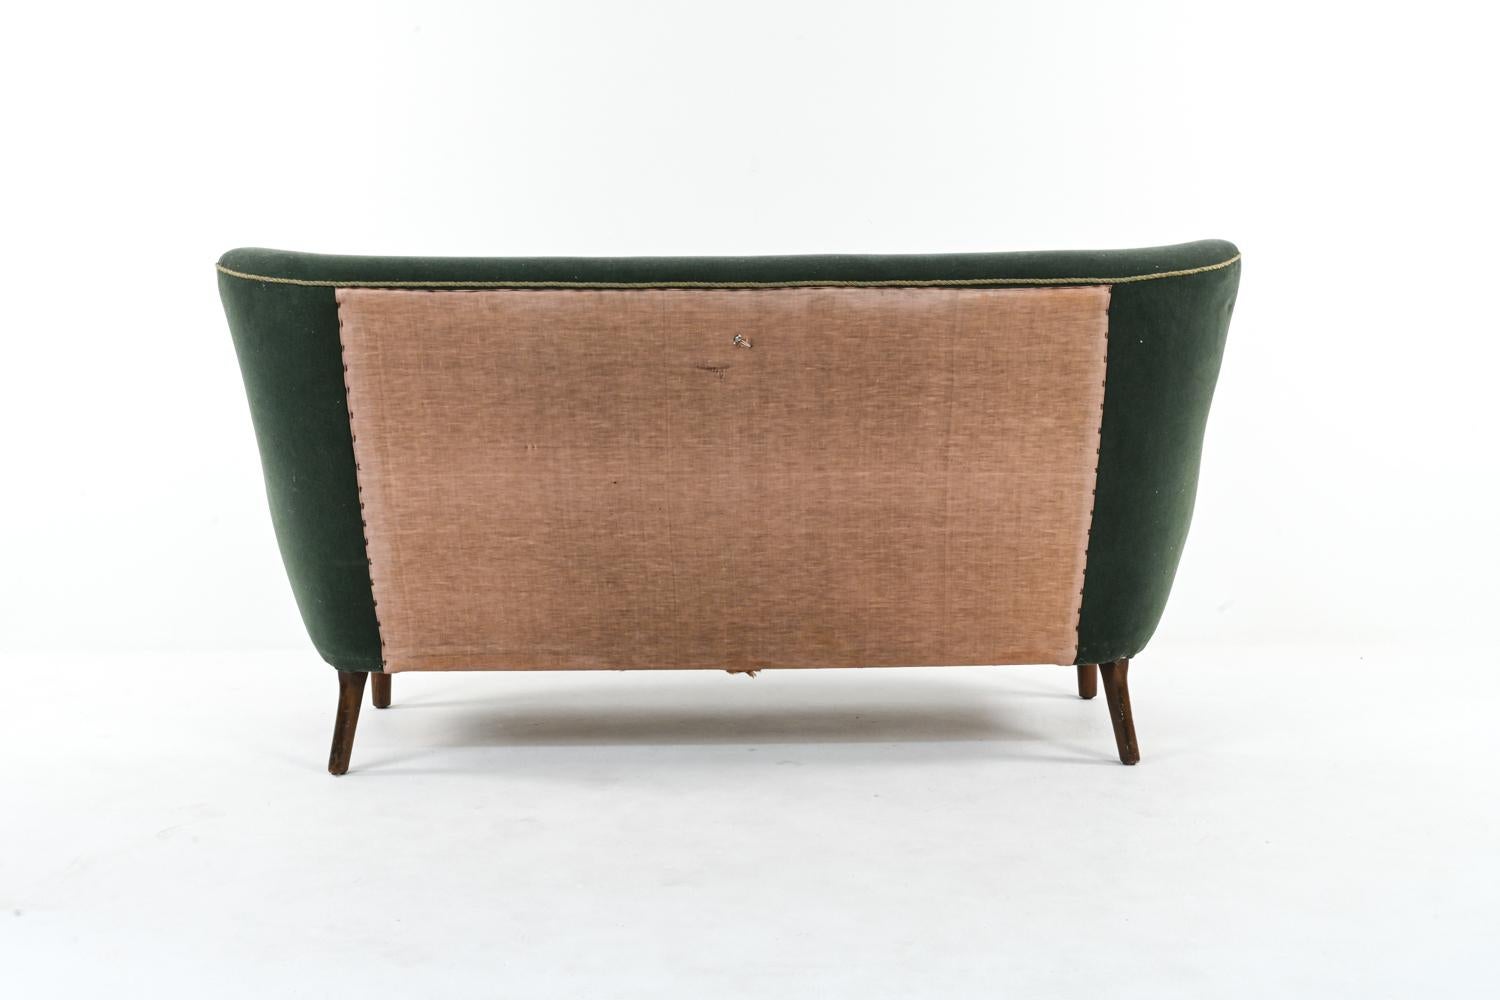 20th Century Danish Mohair Sofa by Alfred Christensen for Slagelse Mobelvaerk, C. 1940's